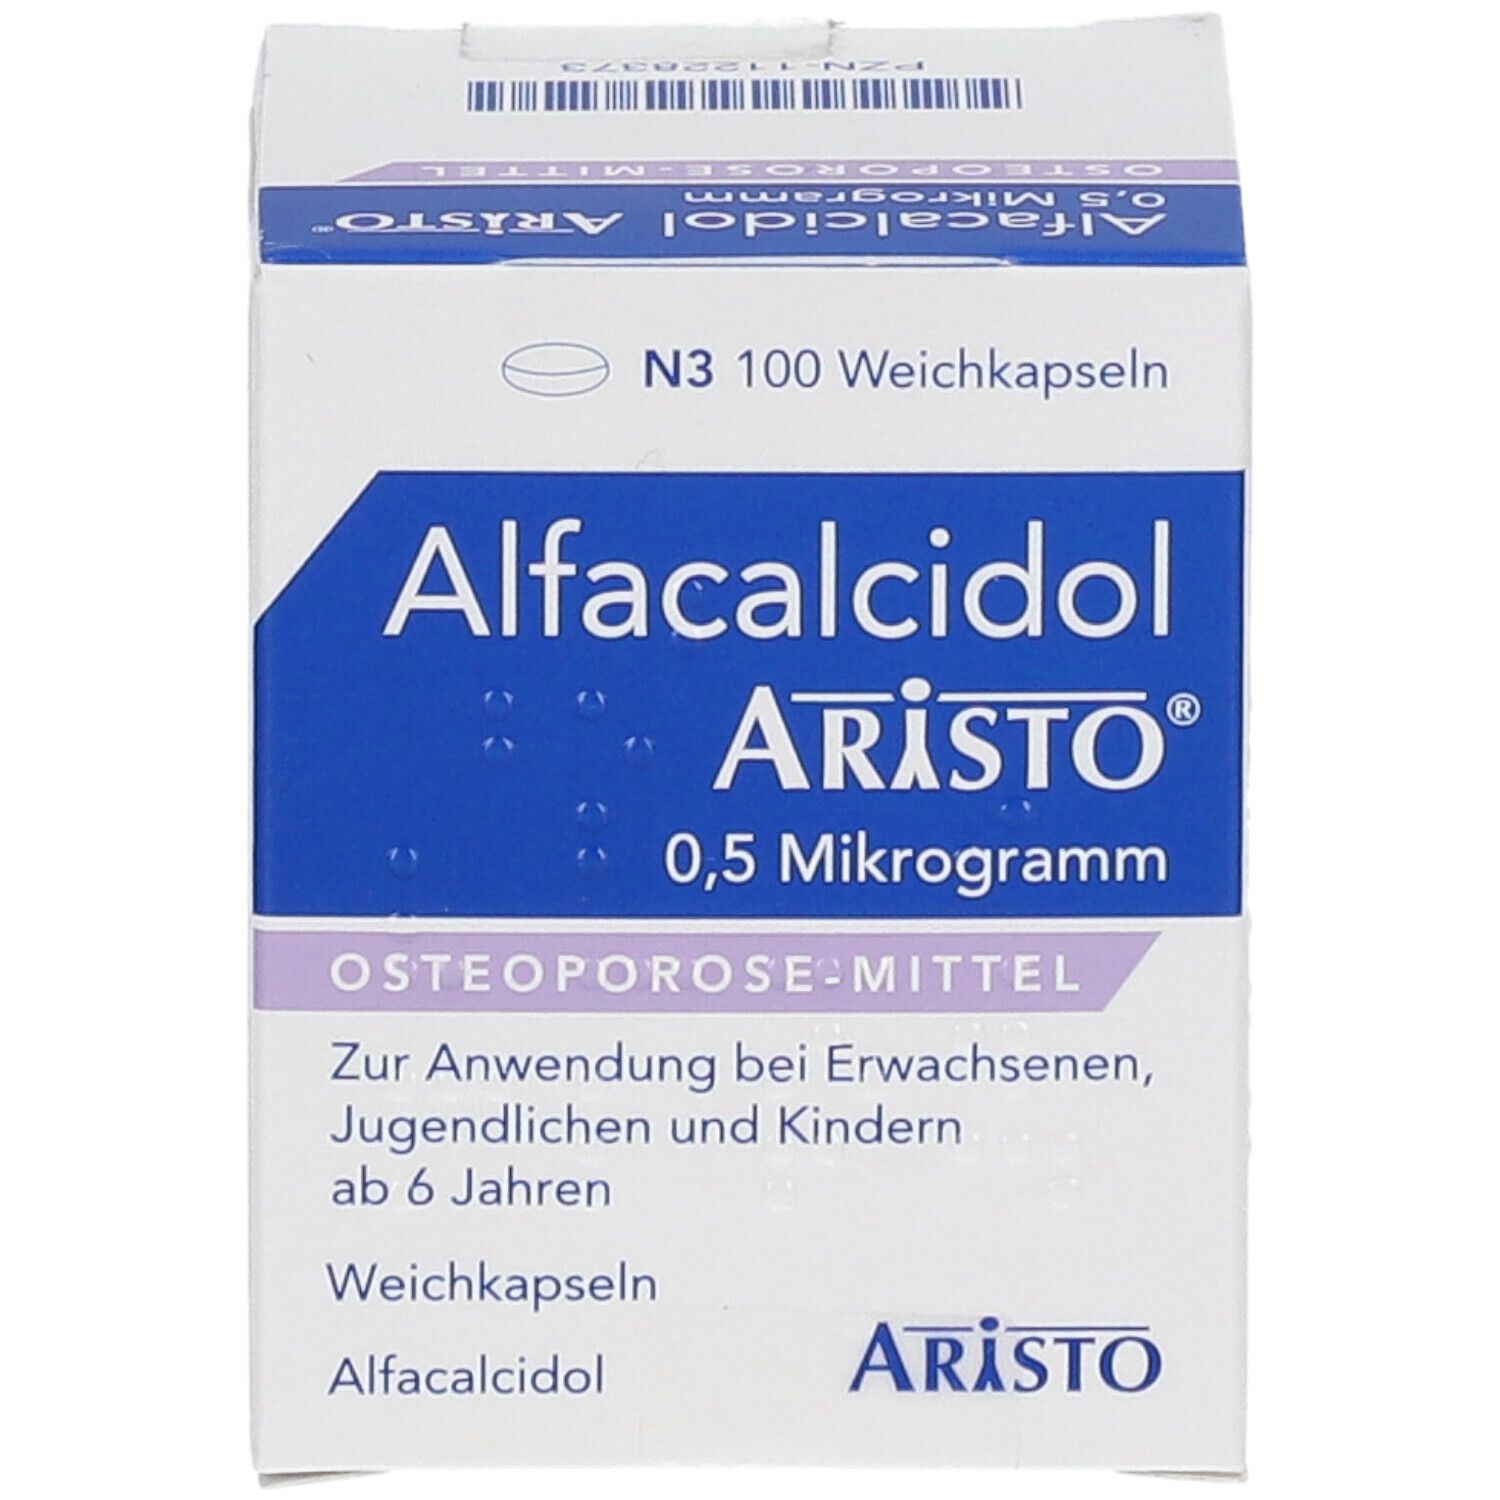 Alfacalcidol Aristo® 0,5 Mikrogramm